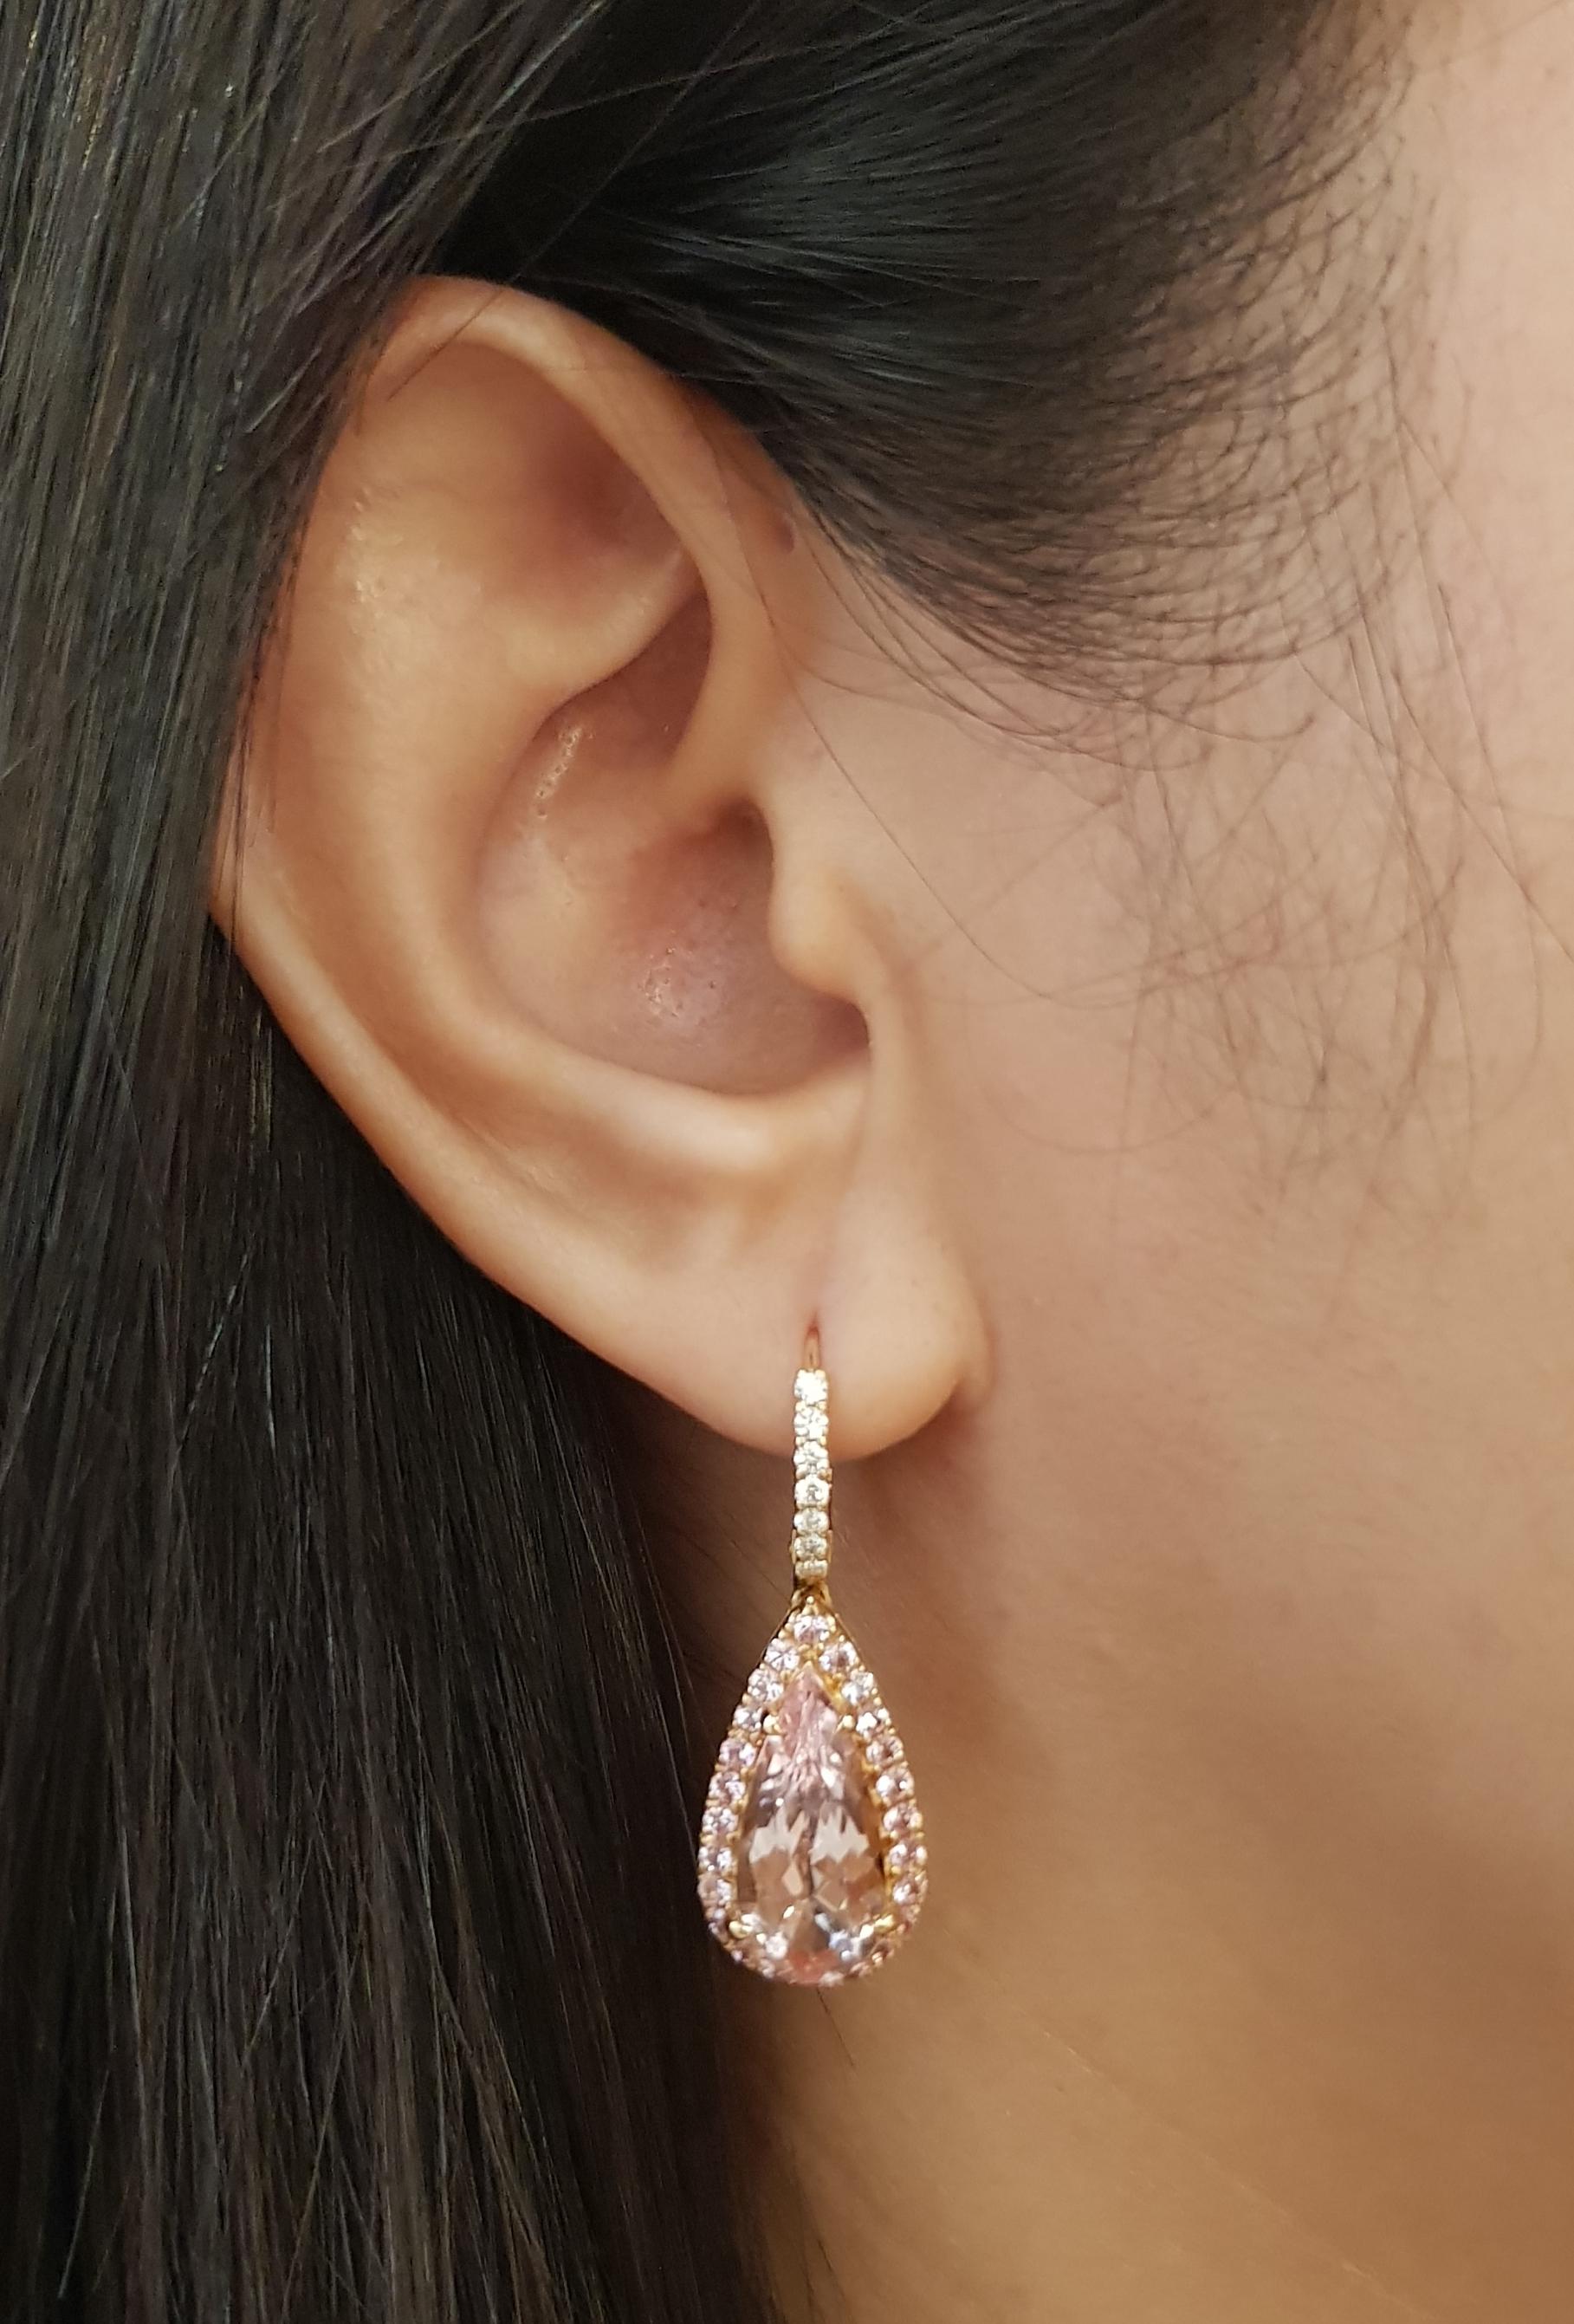 Morganit 7,56 Karat, rosa Saphir 1,10 Karat und Diamant 0,23 Karat Ohrringe in 18K Rose Gold Fassung

Breite: 1.2 cm 
Länge: 3.4 cm
Gesamtgewicht: 8,52 Gramm

